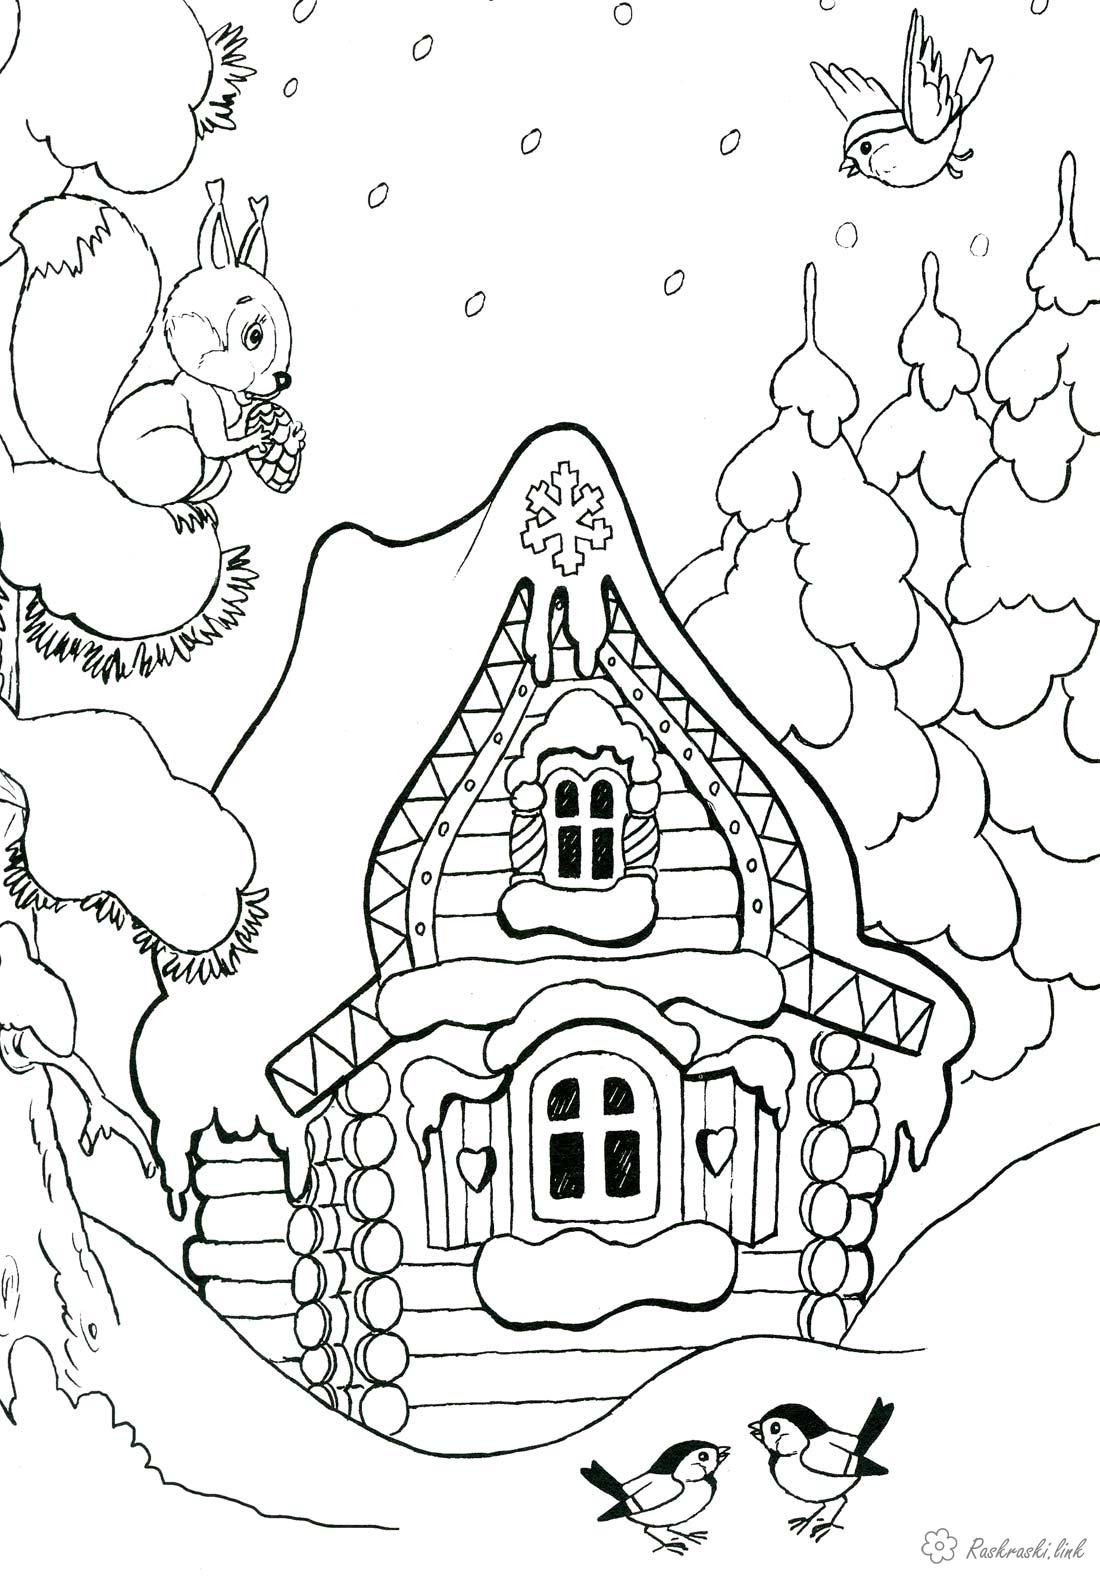 Раскраски Новый год Детская новогодняя раскраска, сказочный домик в окружении елей